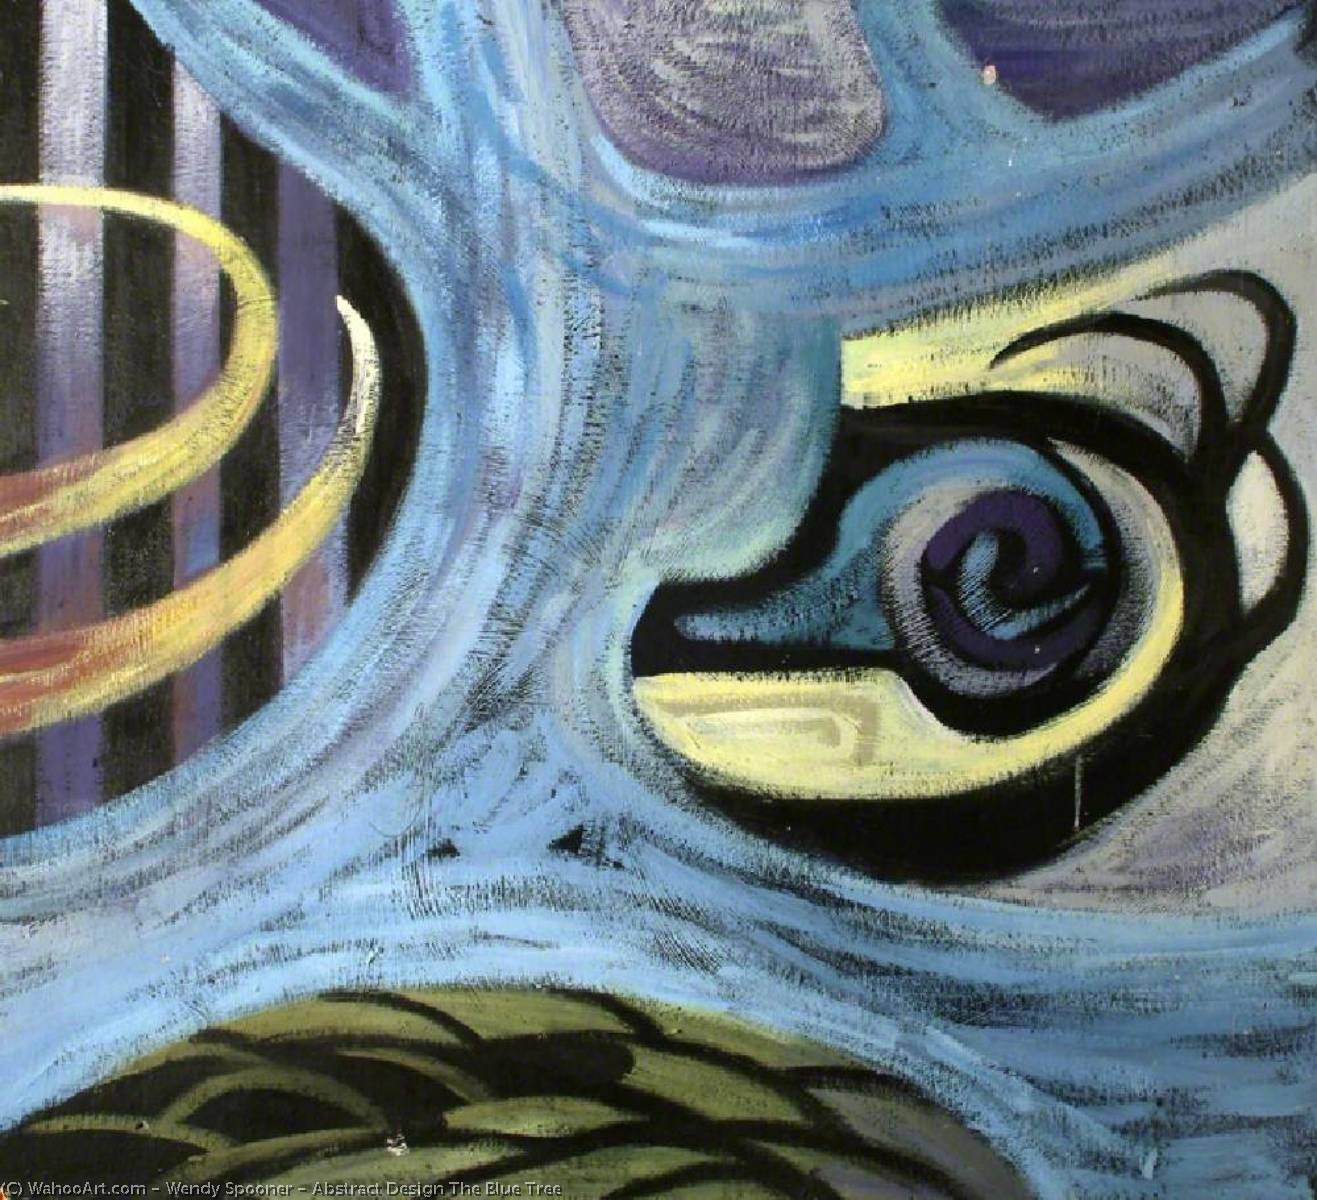 Wikioo.org - Bách khoa toàn thư về mỹ thuật - Vẽ tranh, Tác phẩm nghệ thuật Wendy Spooner - Abstract Design The Blue Tree